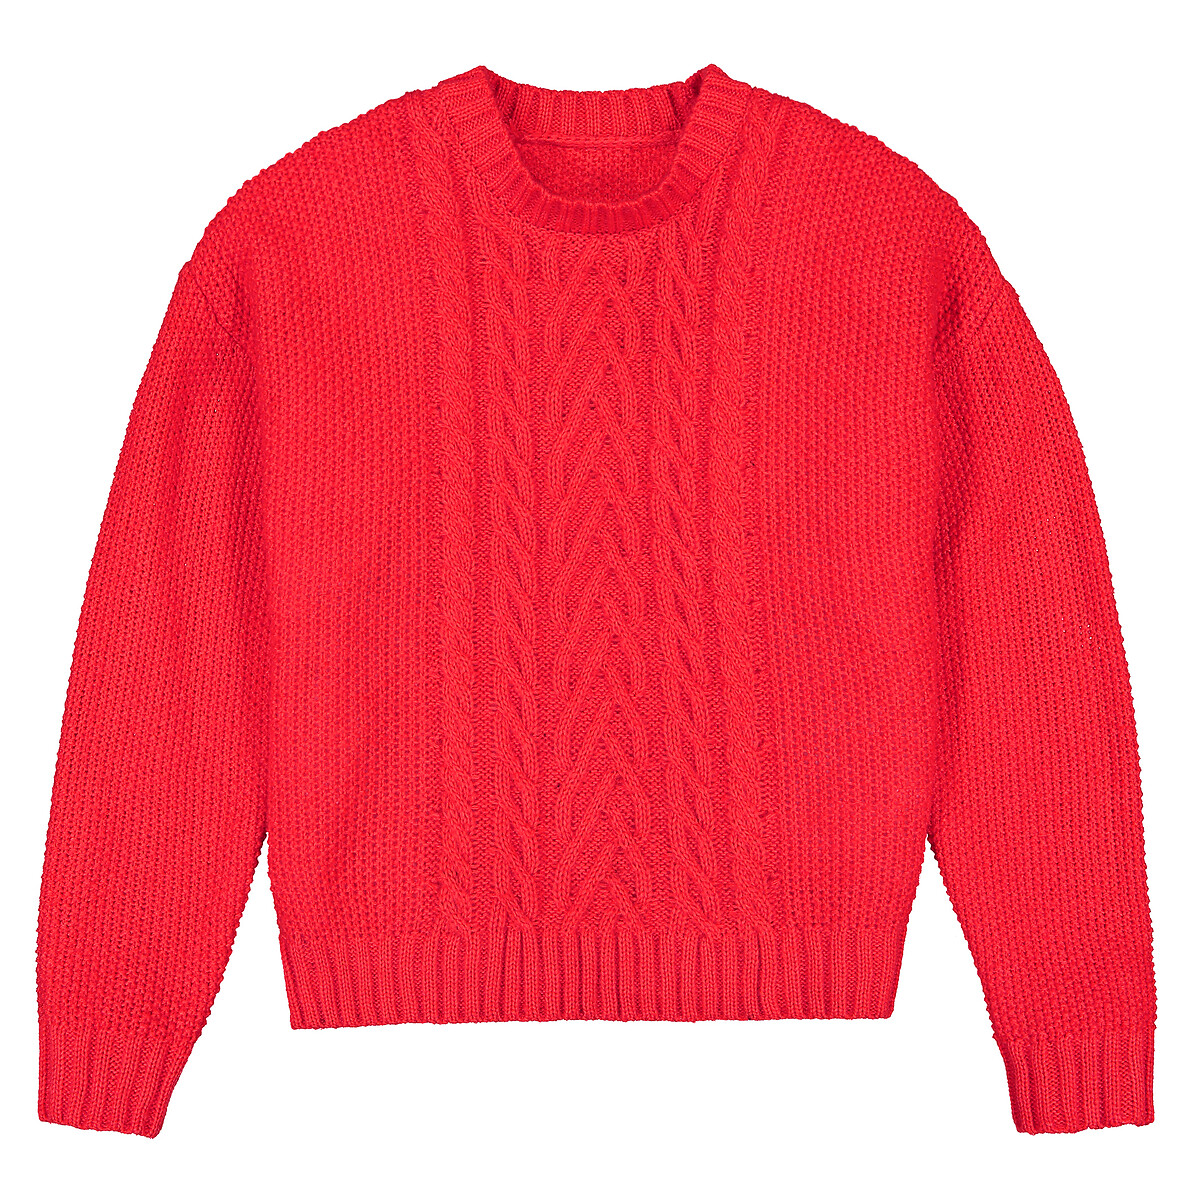 Пуловер LaRedoute С круглым вырезом из плотного трикотажа 10-18 лет 12 лет -150 см красный, размер 12 лет -150 см - фото 3